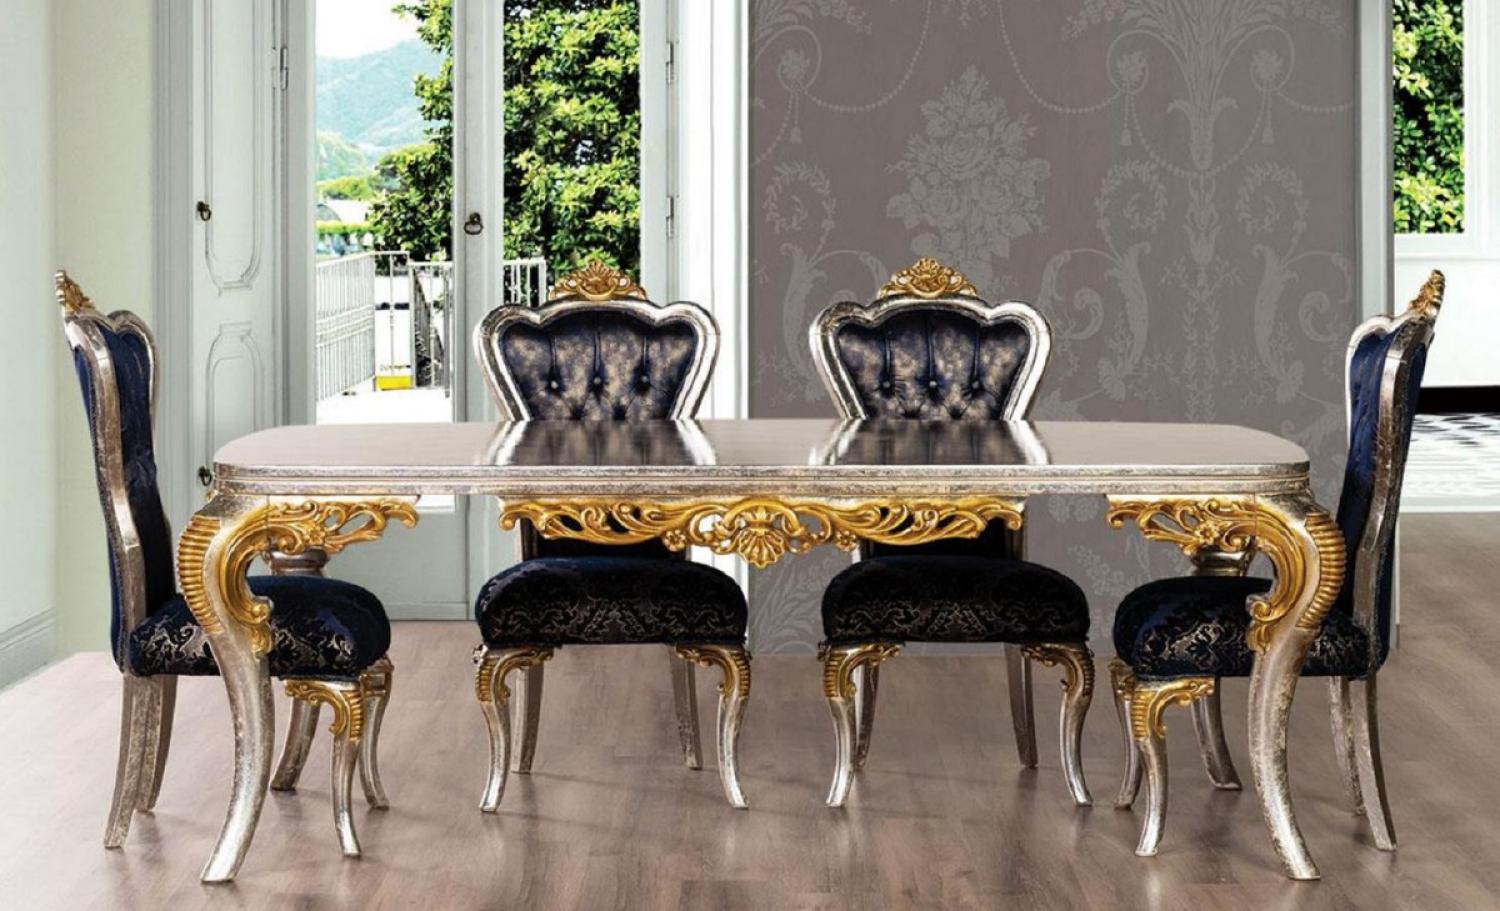 Casa Padrino Luxus Barock Esszimmer Set Royalblau / Silber / Gold - 1 Barock Esstisch & 6 Barock Esszimmerstühle - Esszimmer Möbel im Barockstil - Edel & Prunkvoll Bild 1